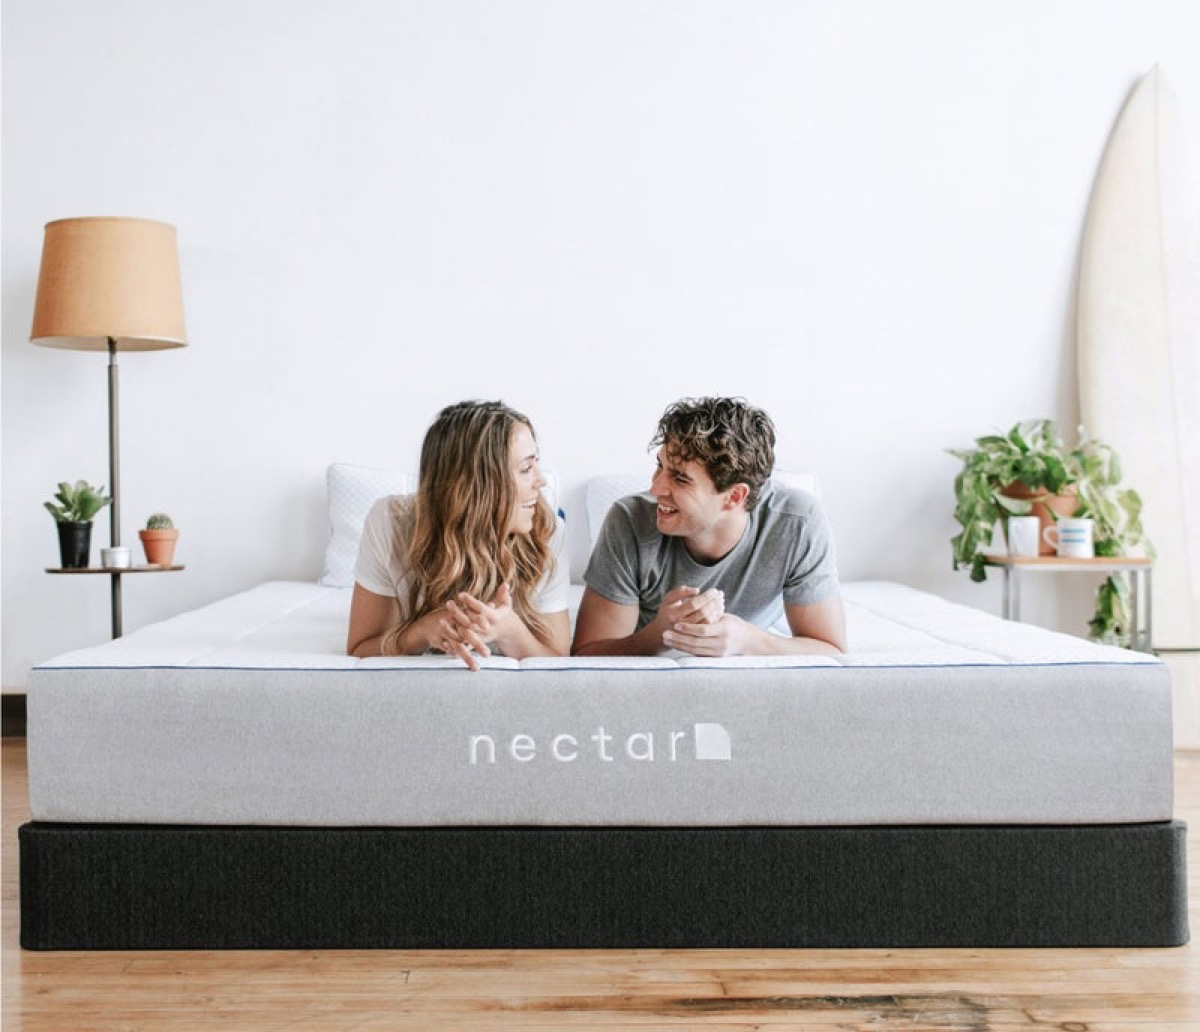 Couple talking on new mattress